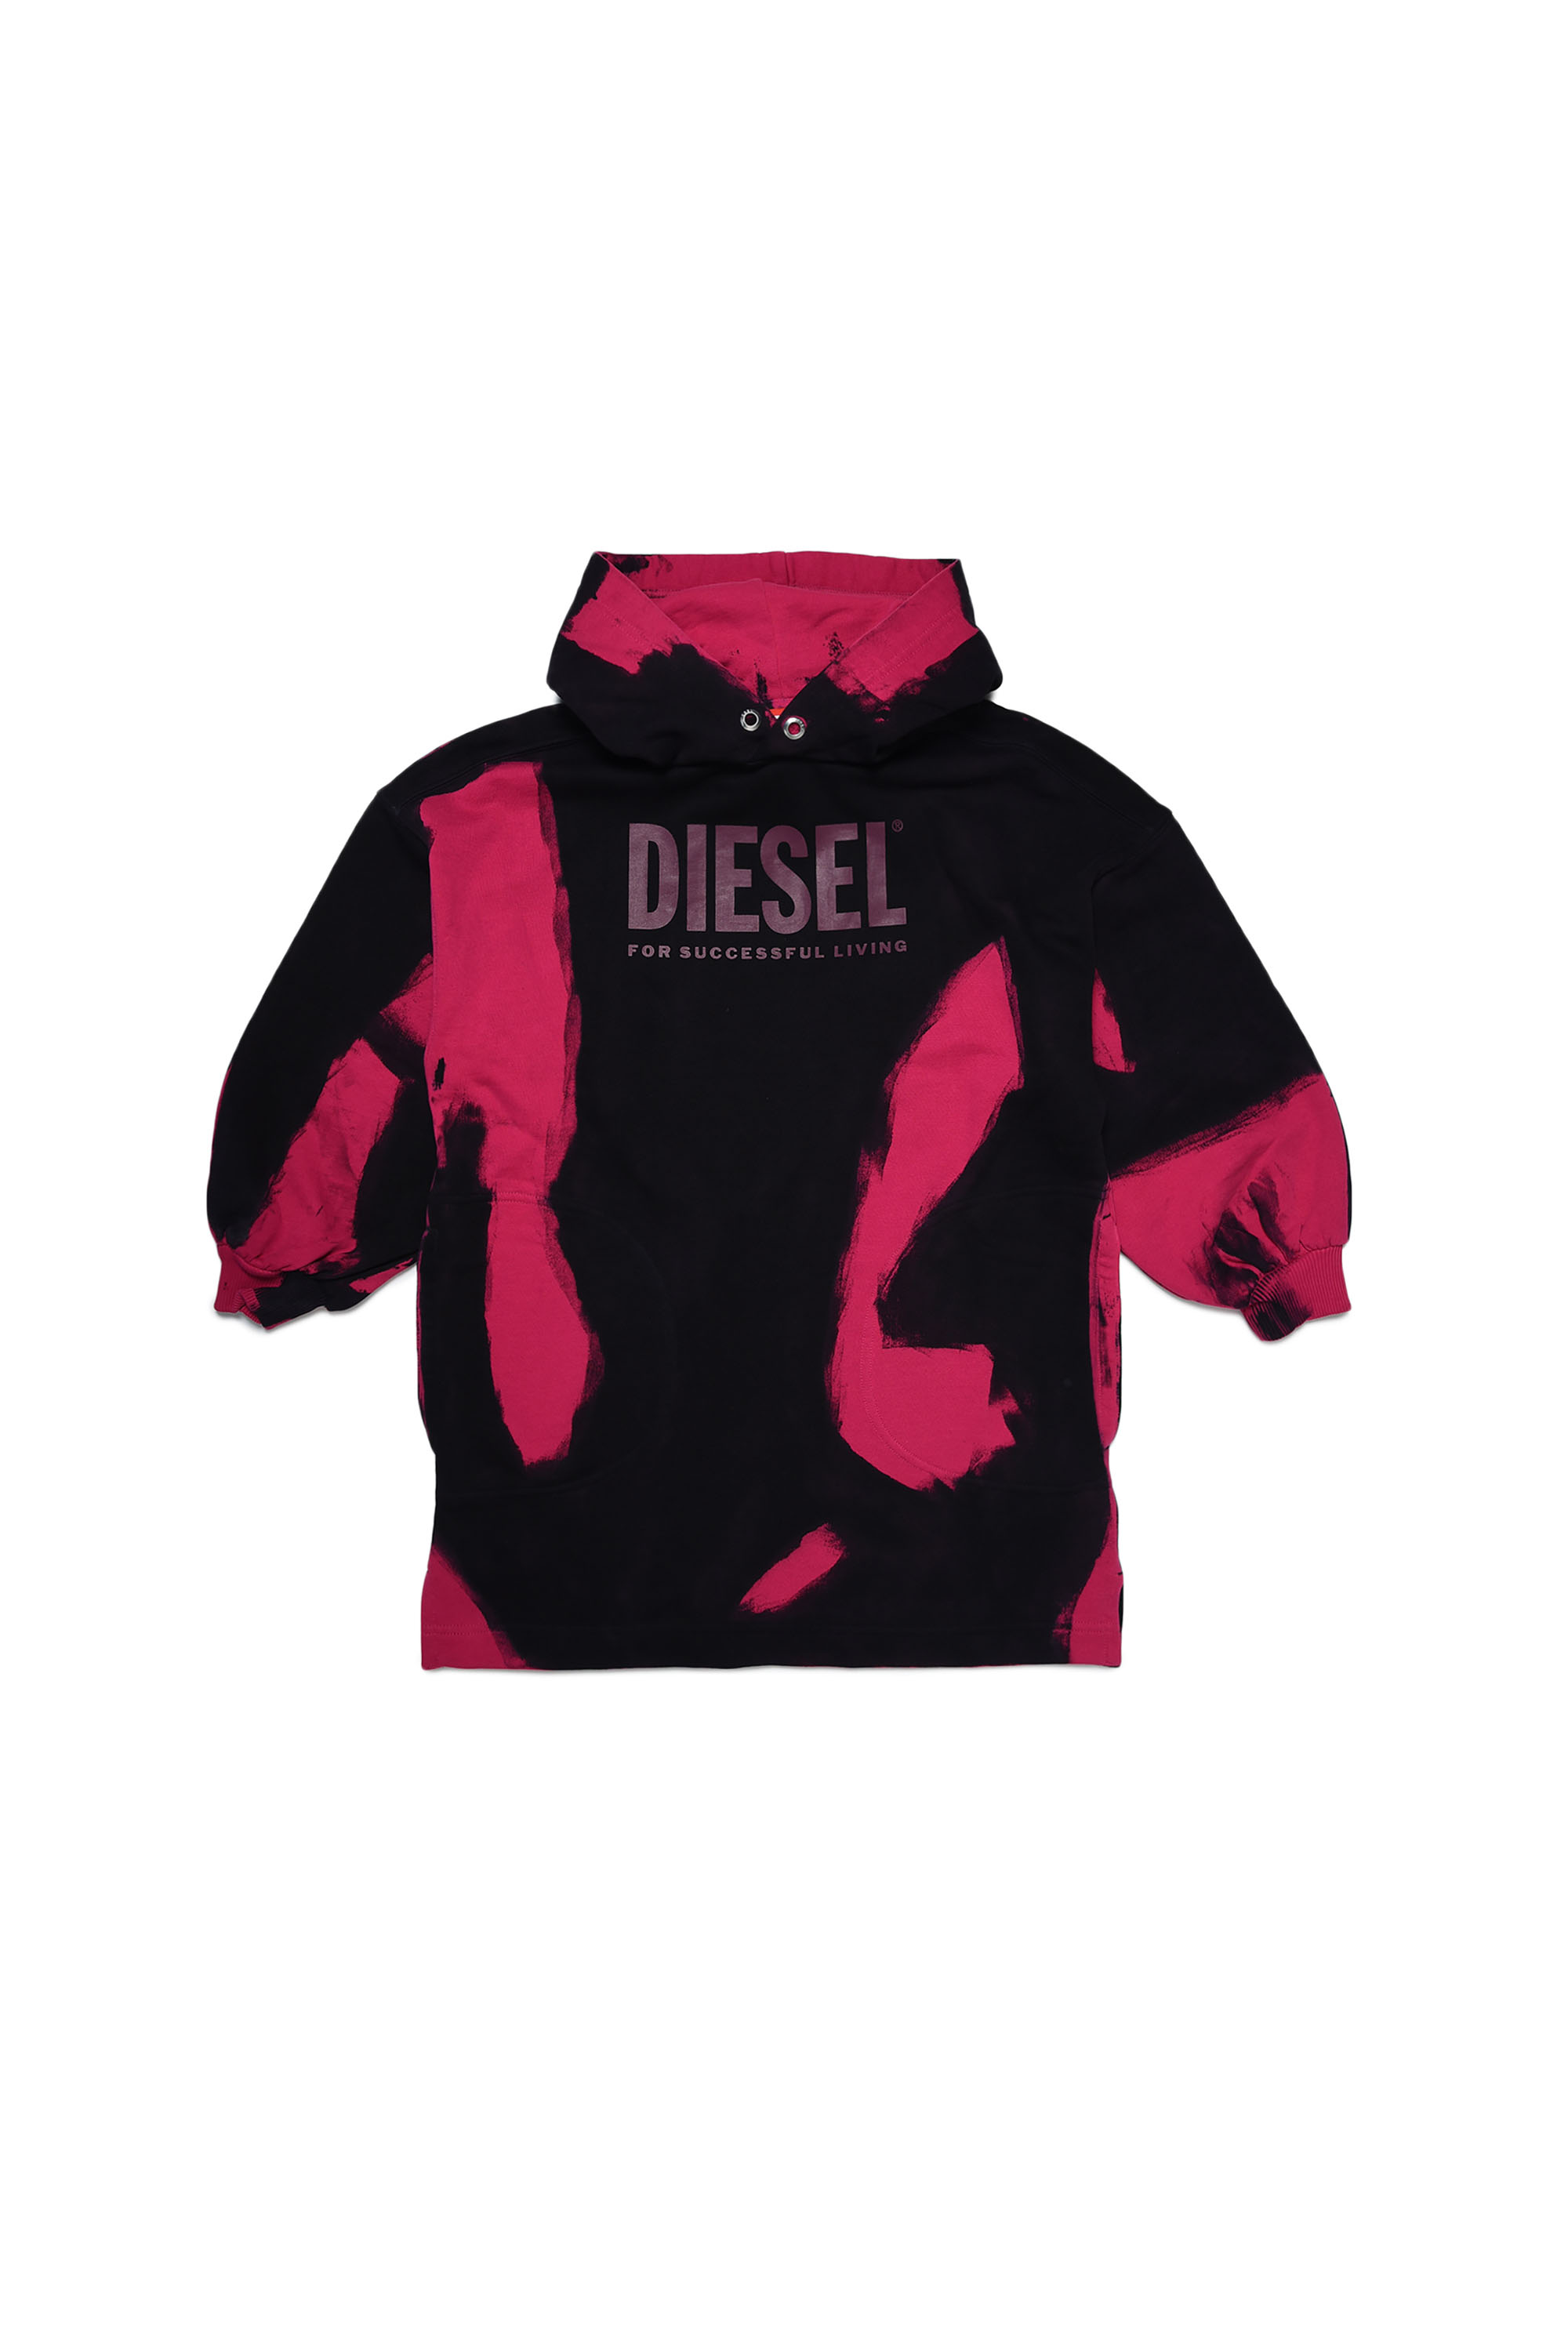 Diesel - DSHAT&D HOOD, Black/Pink - Image 1